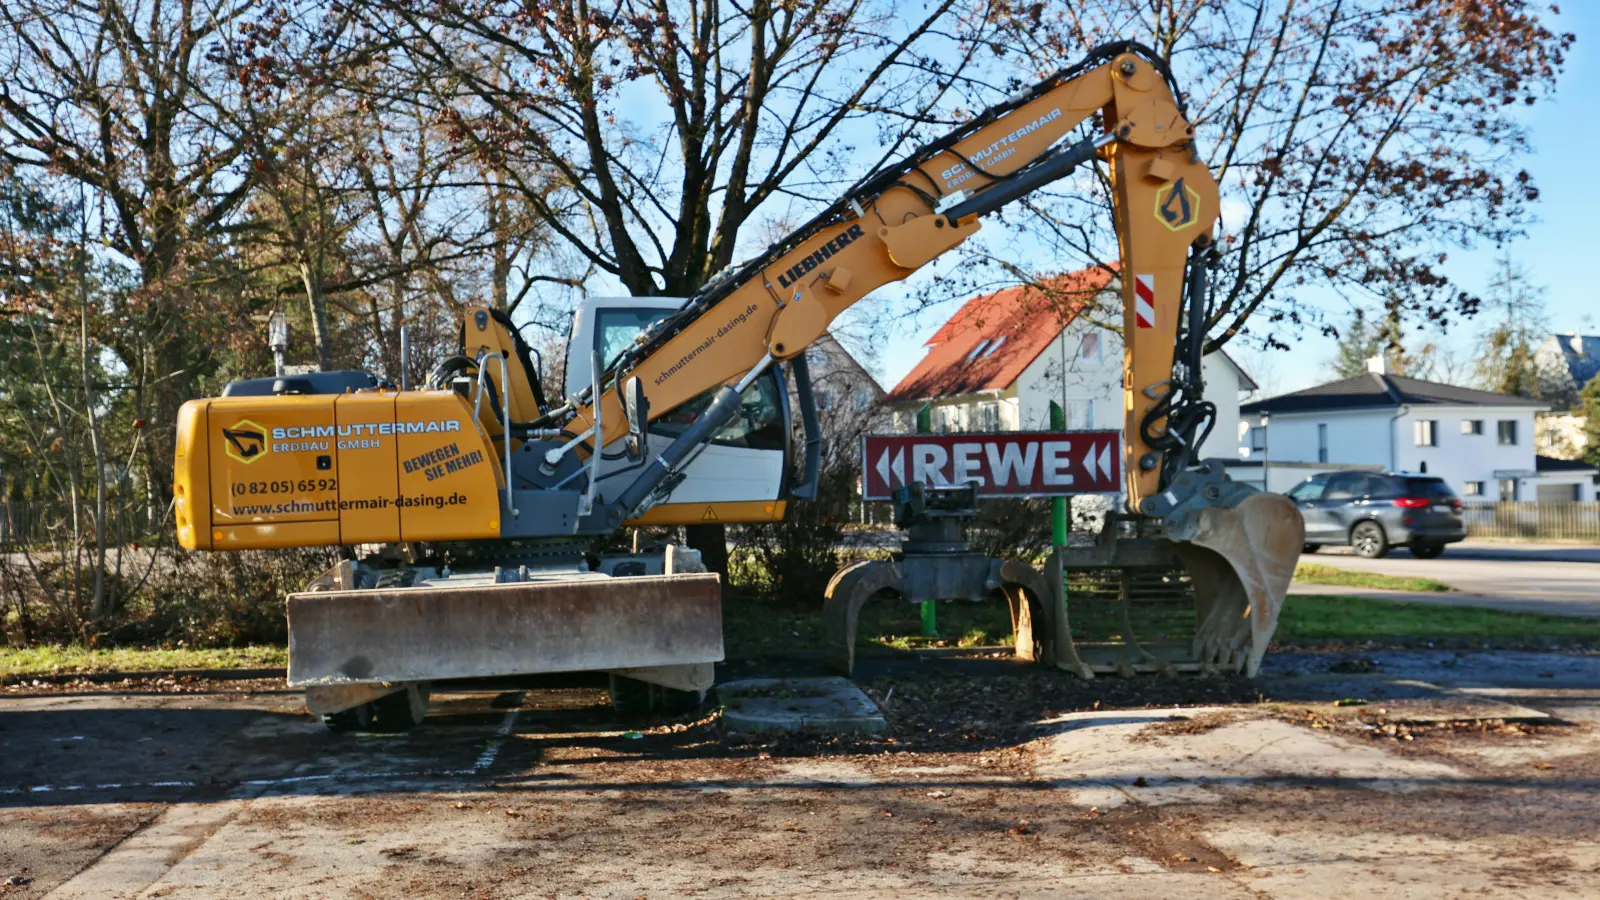 Der Rewe-Markt an der Schrobenhausener Straße in Aichach wird jetzt abgerissen. Geschlossen ist er seit 5. Januar. Wann mit dem Bau des neuen Marktes begonnen werden soll, ist noch unklar. (Foto: Erich Hoffmann)